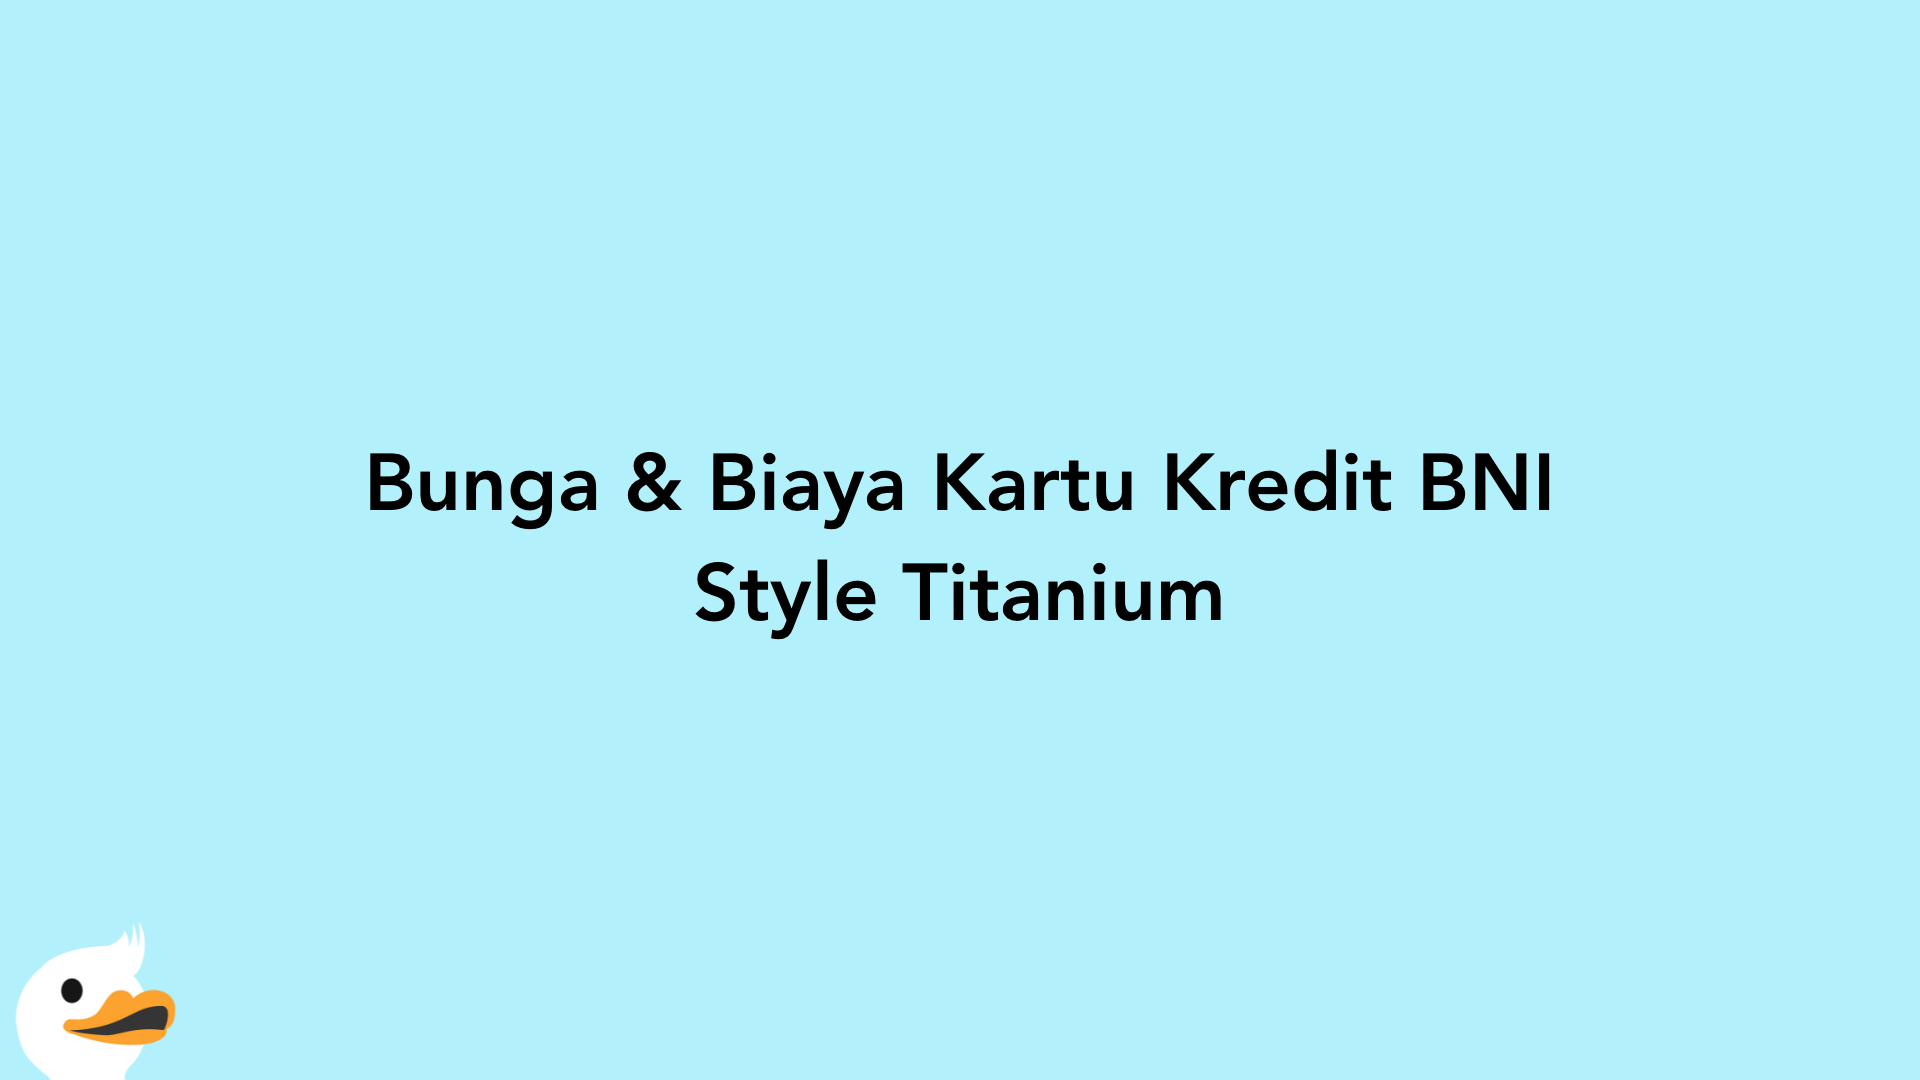 Bunga & Biaya Kartu Kredit BNI Style Titanium